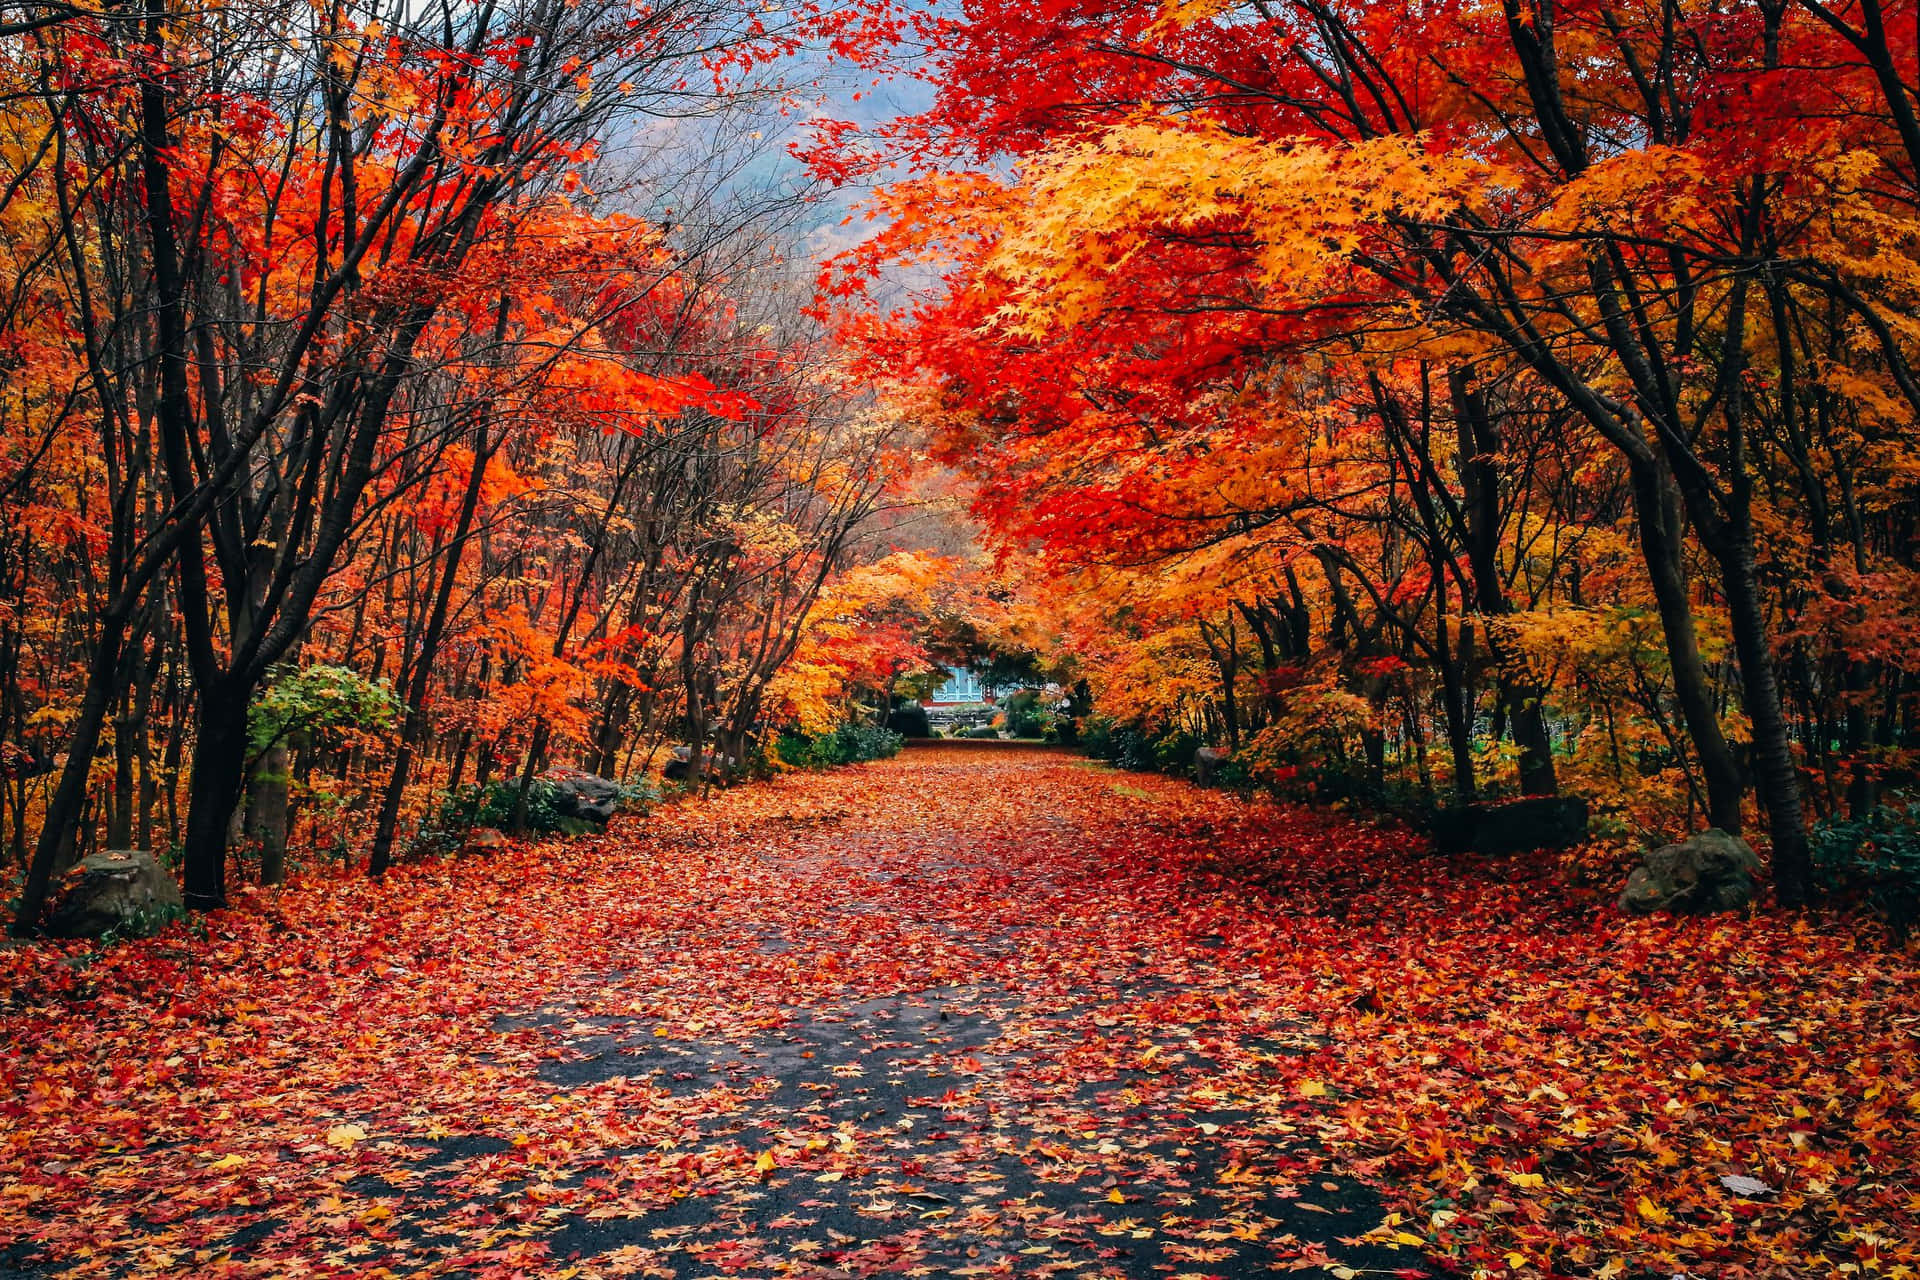 Velkommen til efteråret - nyd disse nuancer af rød, orange og gulblade.